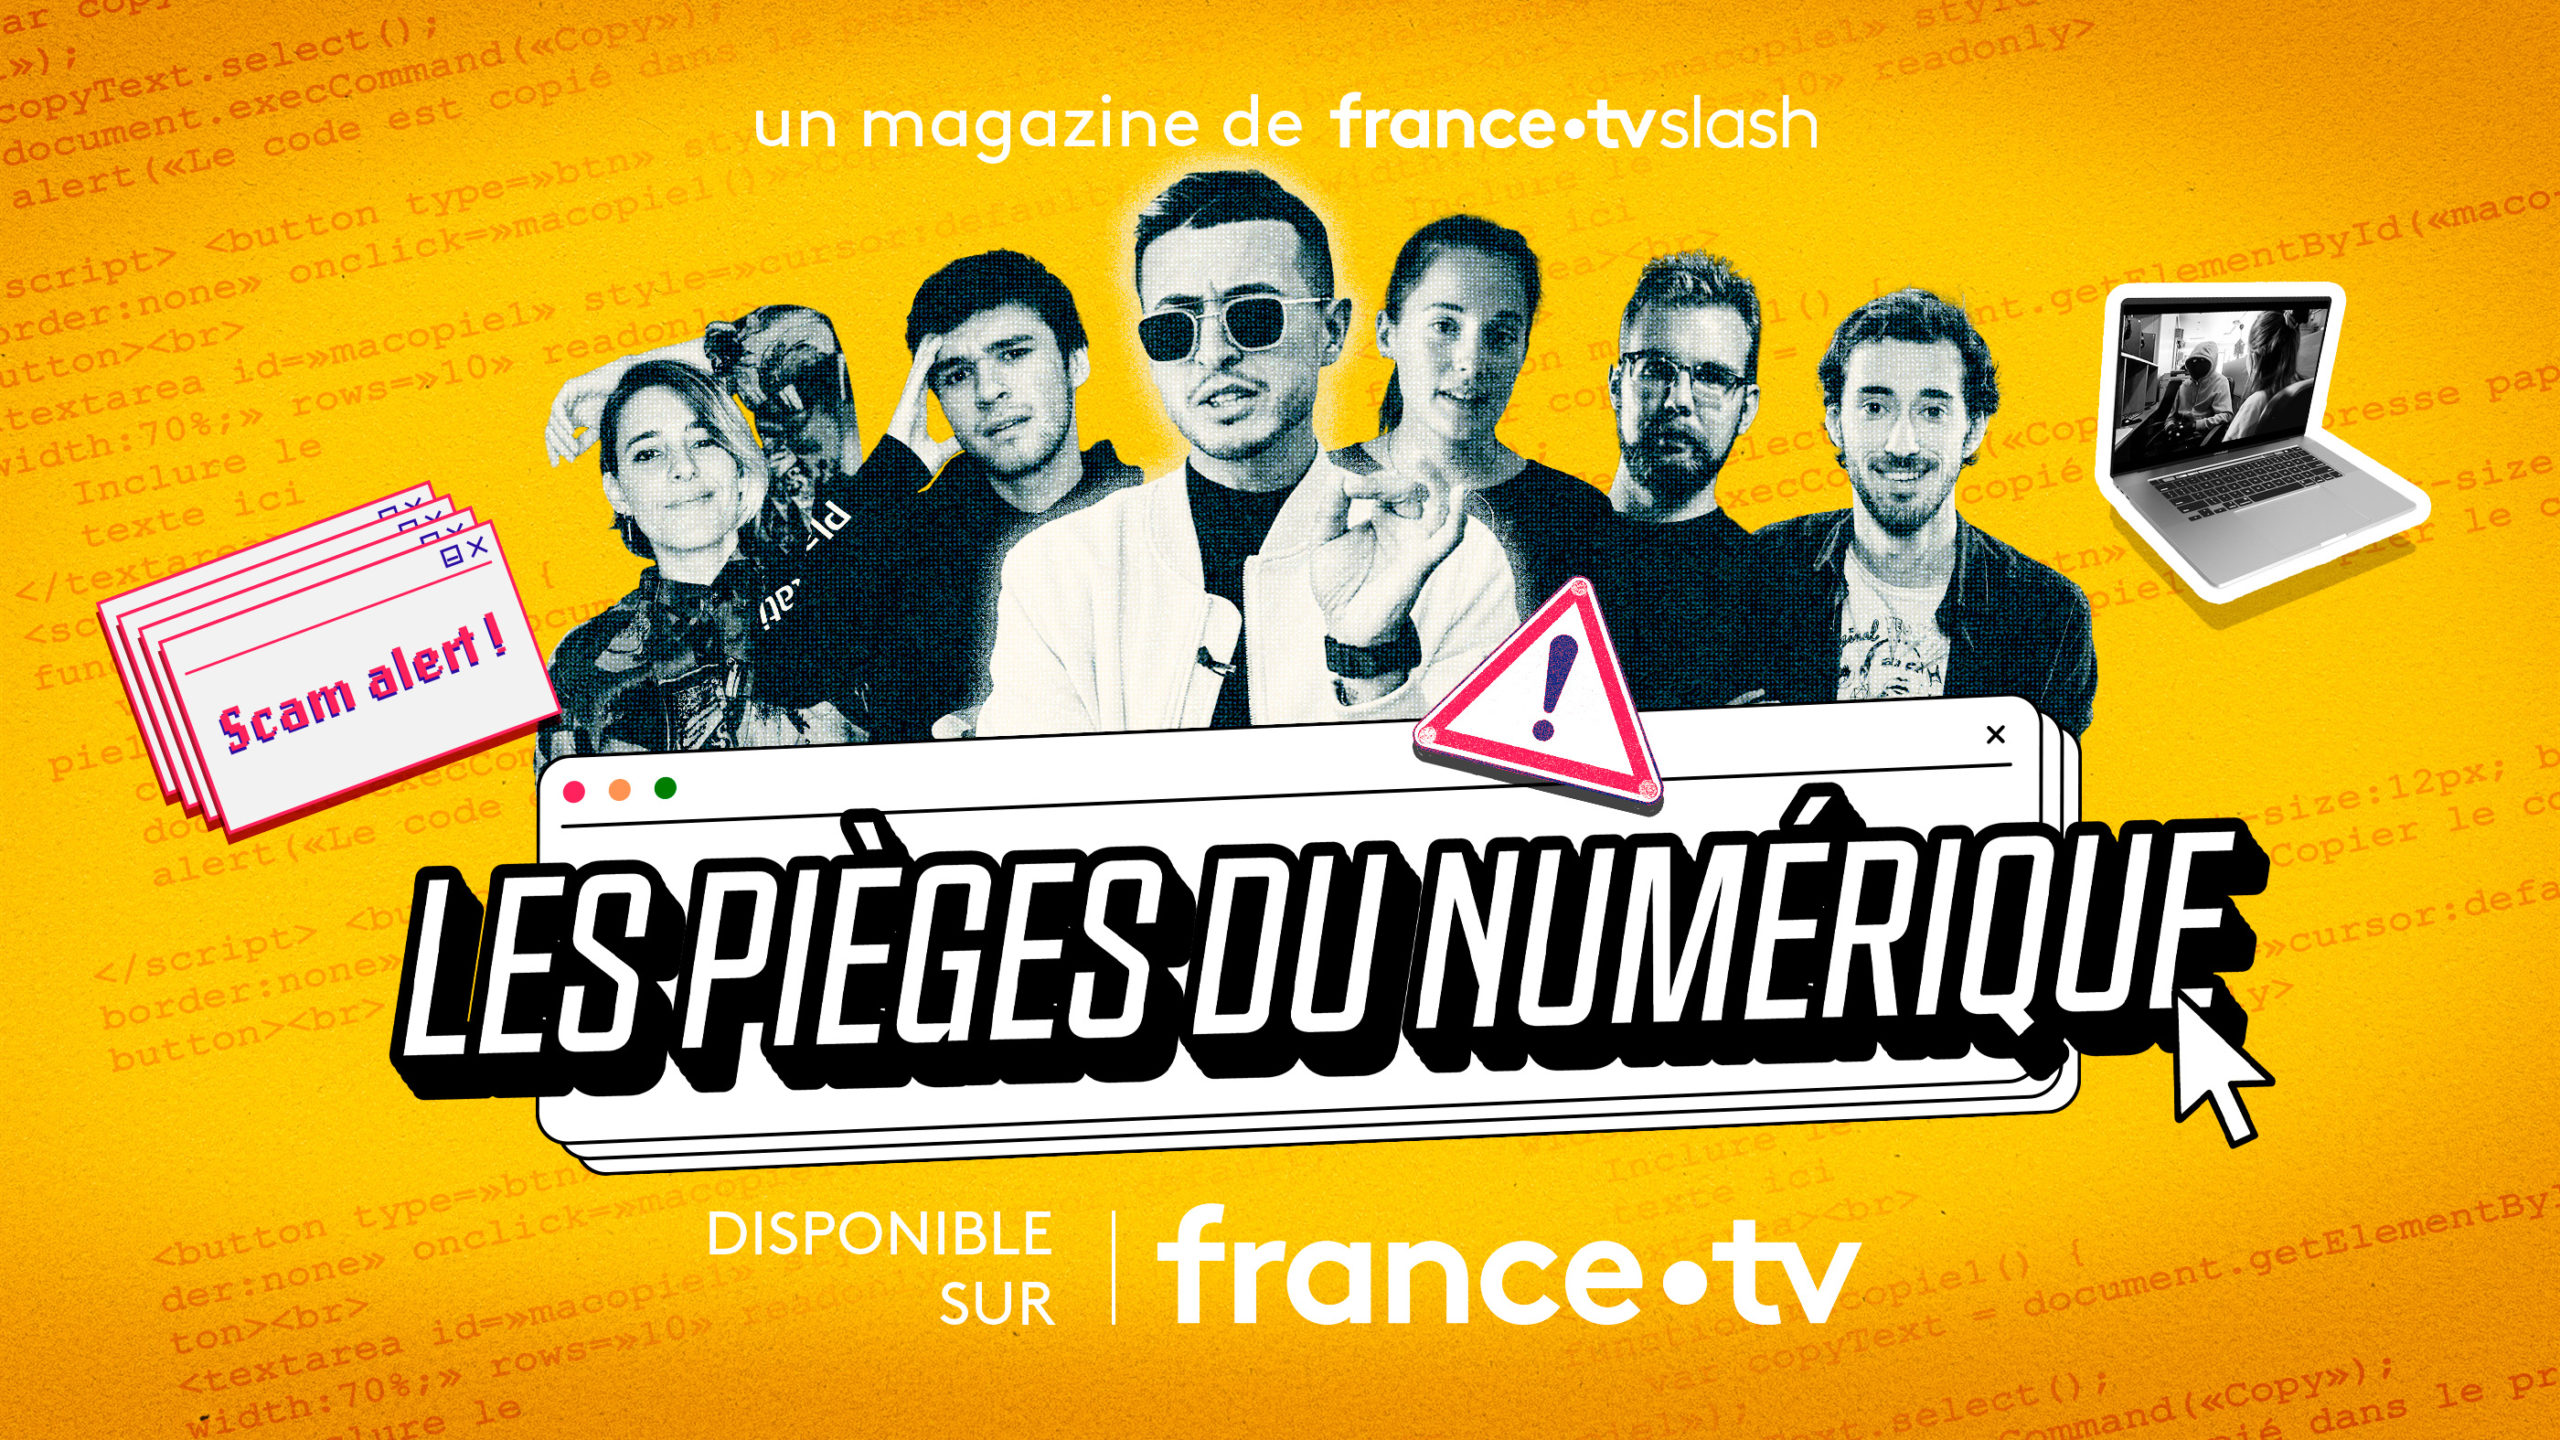 Les influenceurs deviennent des chasseurs d’arnaques pour France.tv Slash